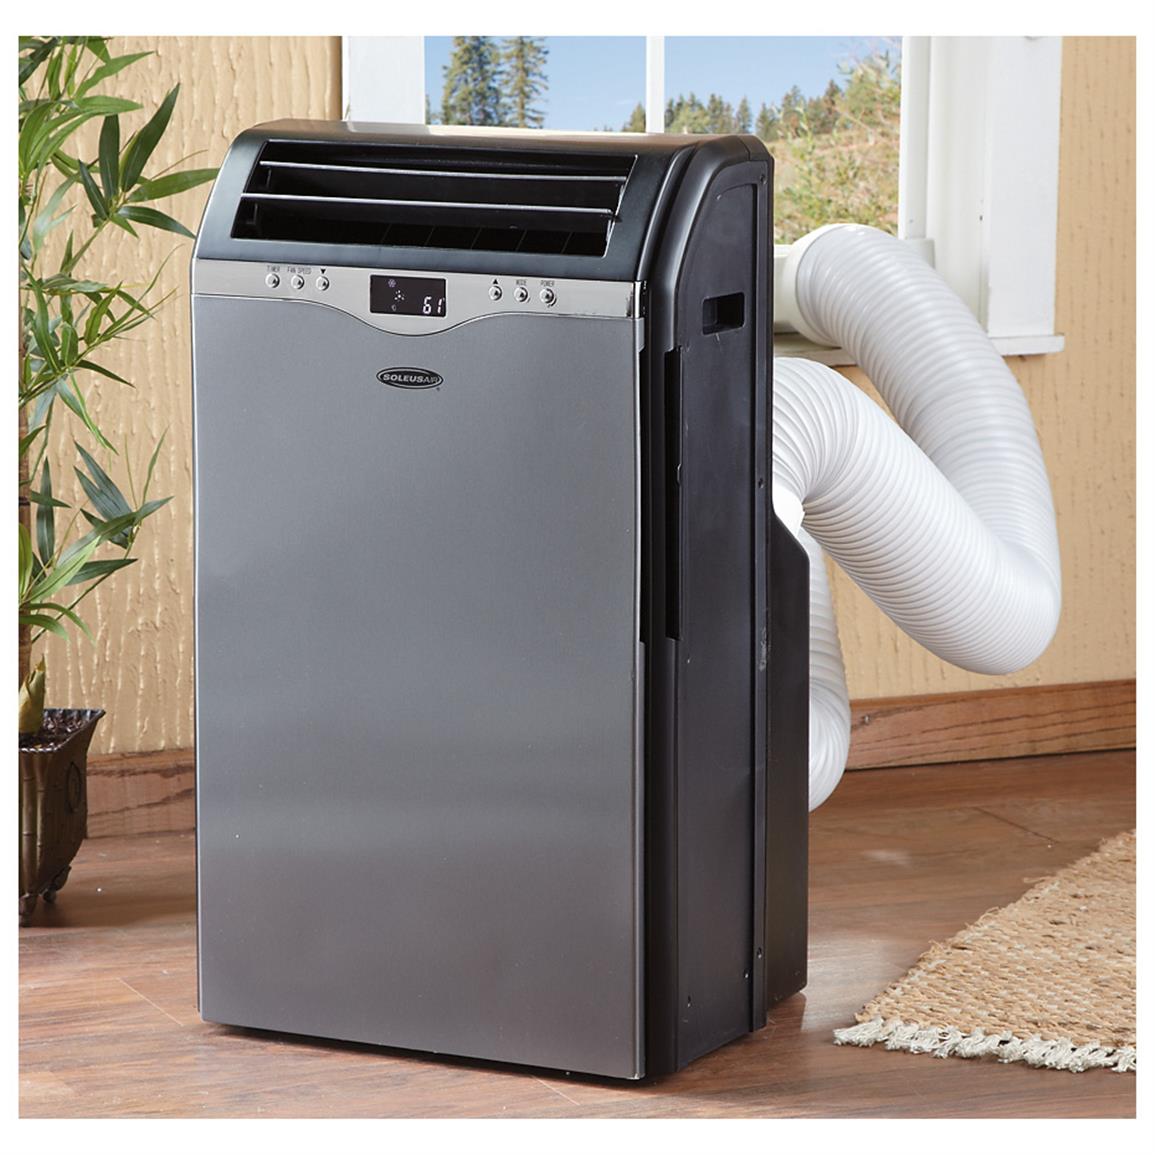 Soleus Air® Portable AC Unit (Refurbished) - 593355, Air Conditioners